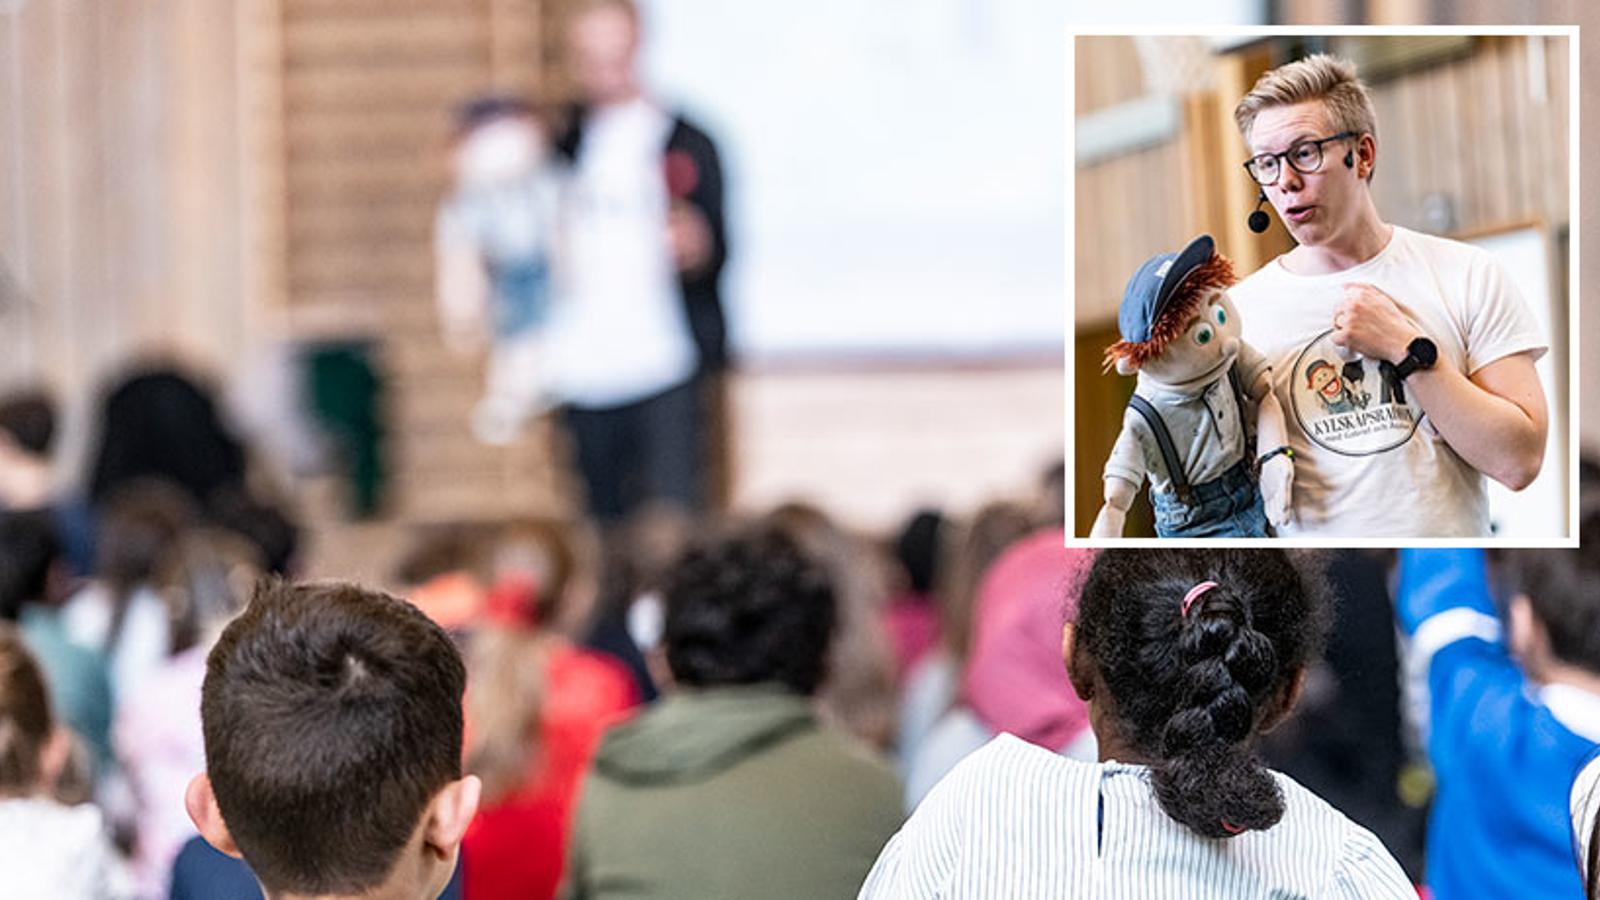 Gabriel Wahl och dockan Åsskars föreställning på en skola. I publiken sitter unga elever och lyssnar.